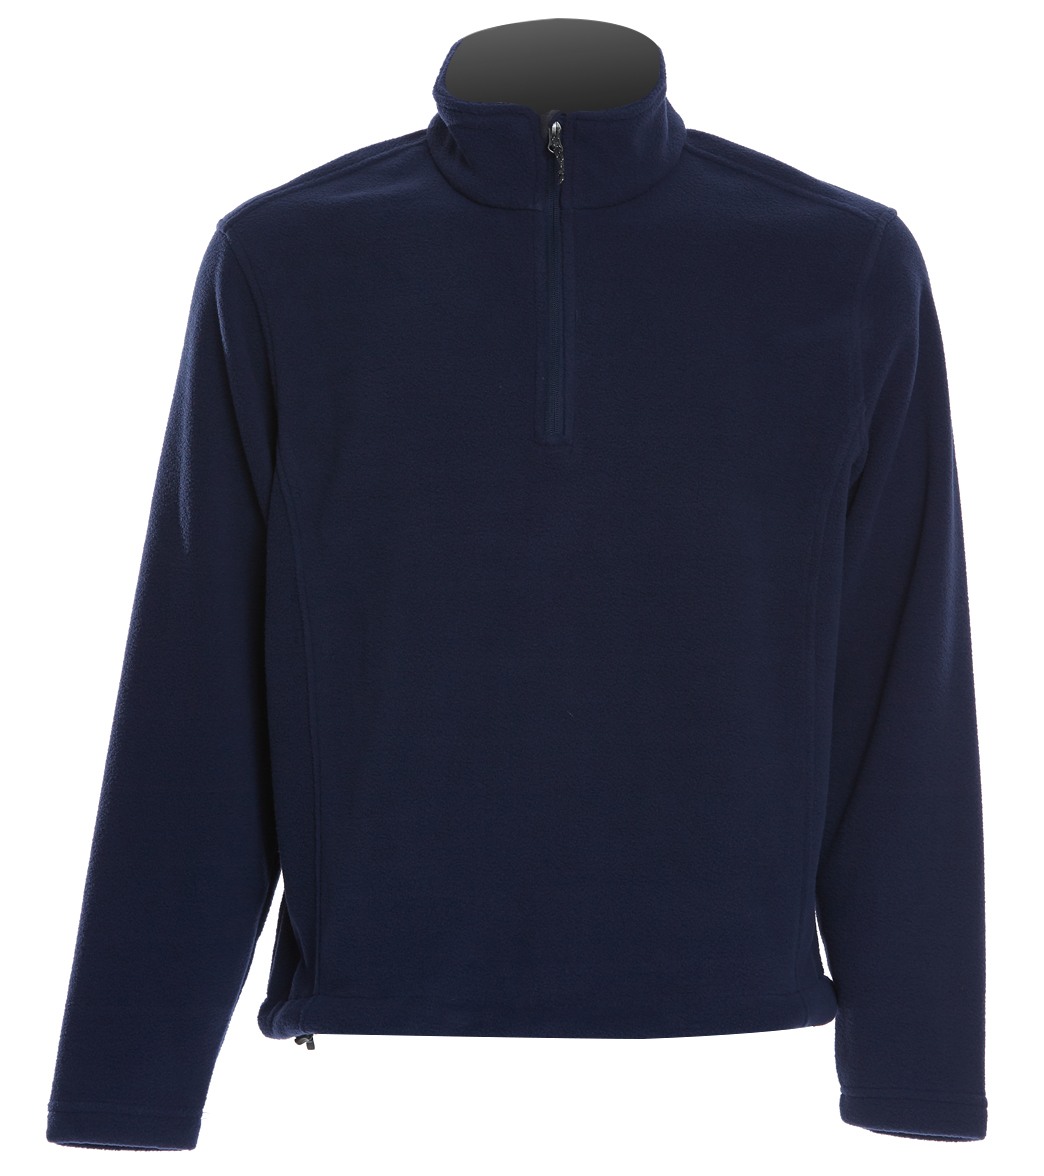 Men's Fleece 1/4-Zip Pullover - True Navy Medium Polyester - Swimoutlet.com